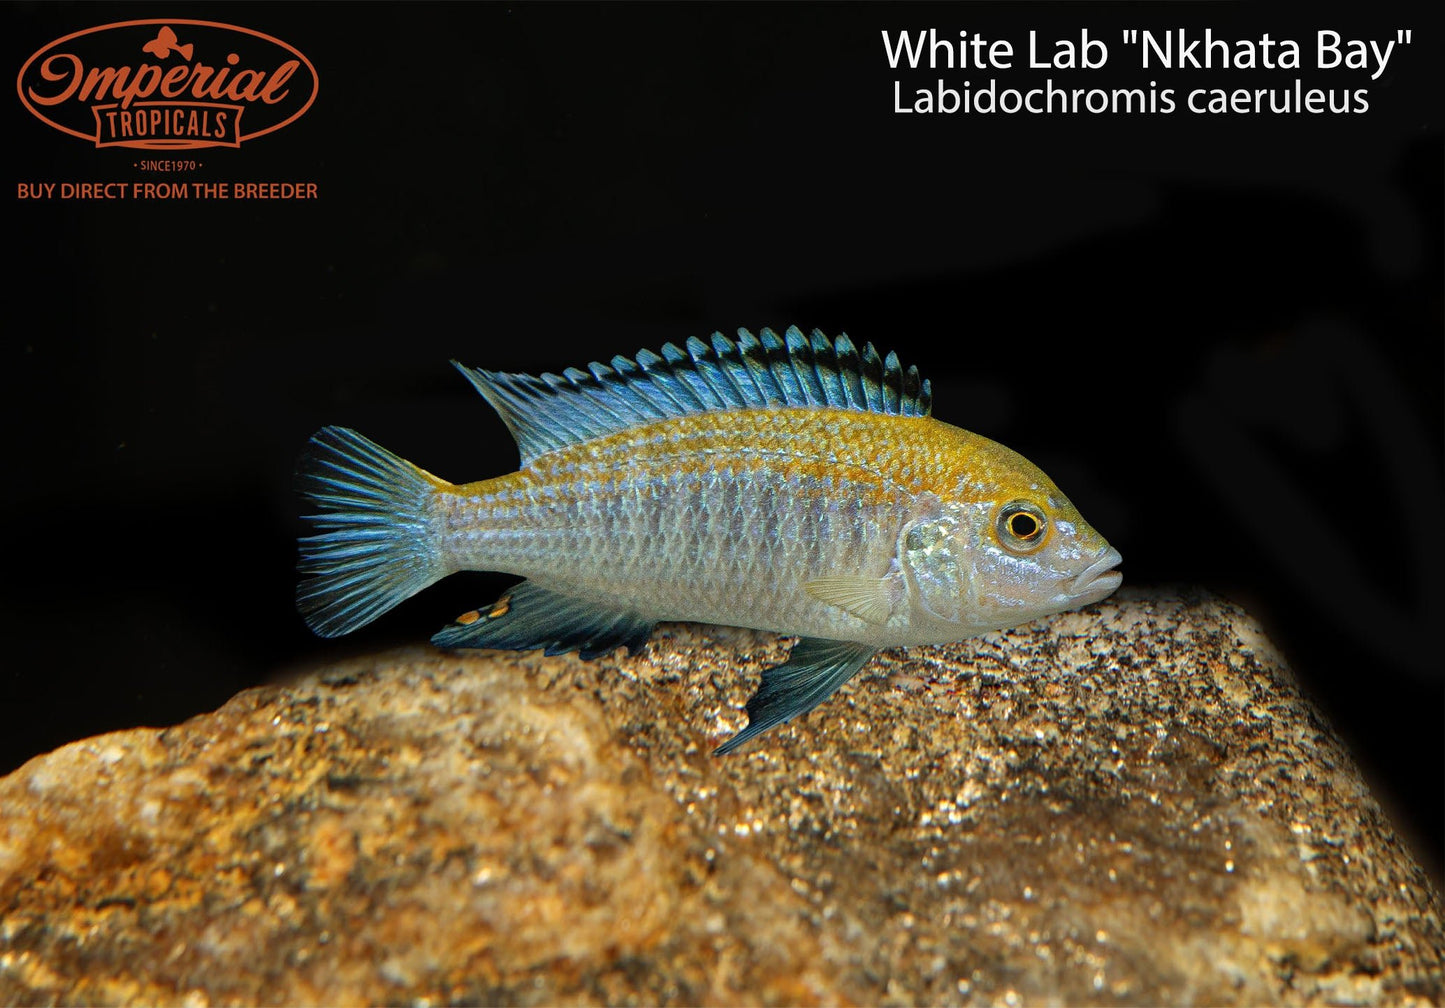 White Lab "Nkhata Bay"